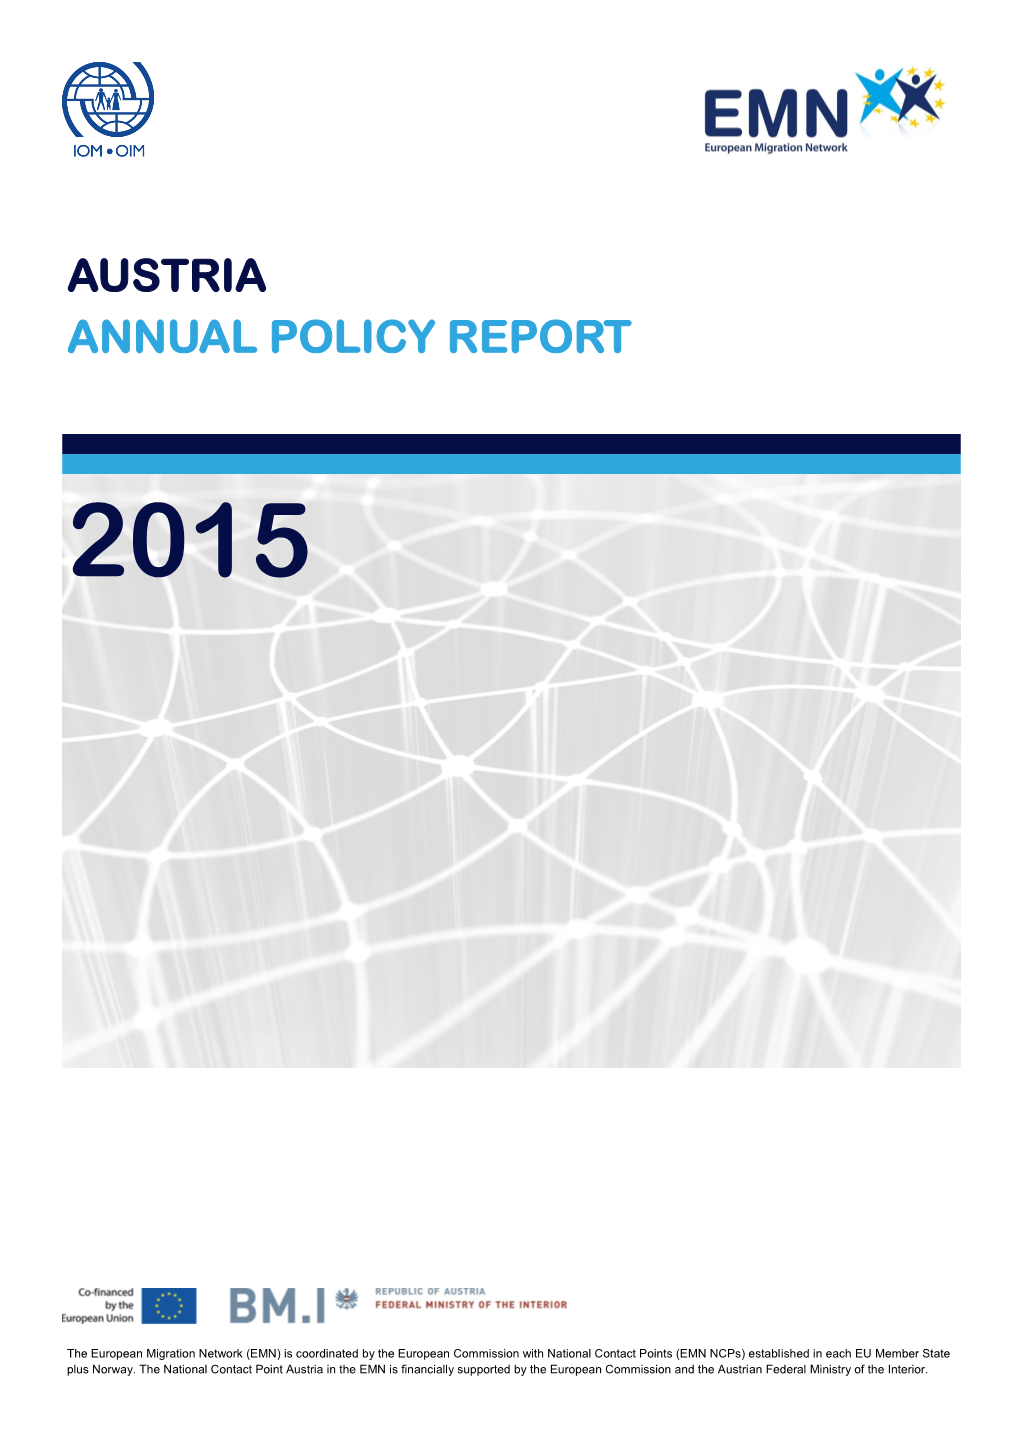 Annual Policy Report Austria